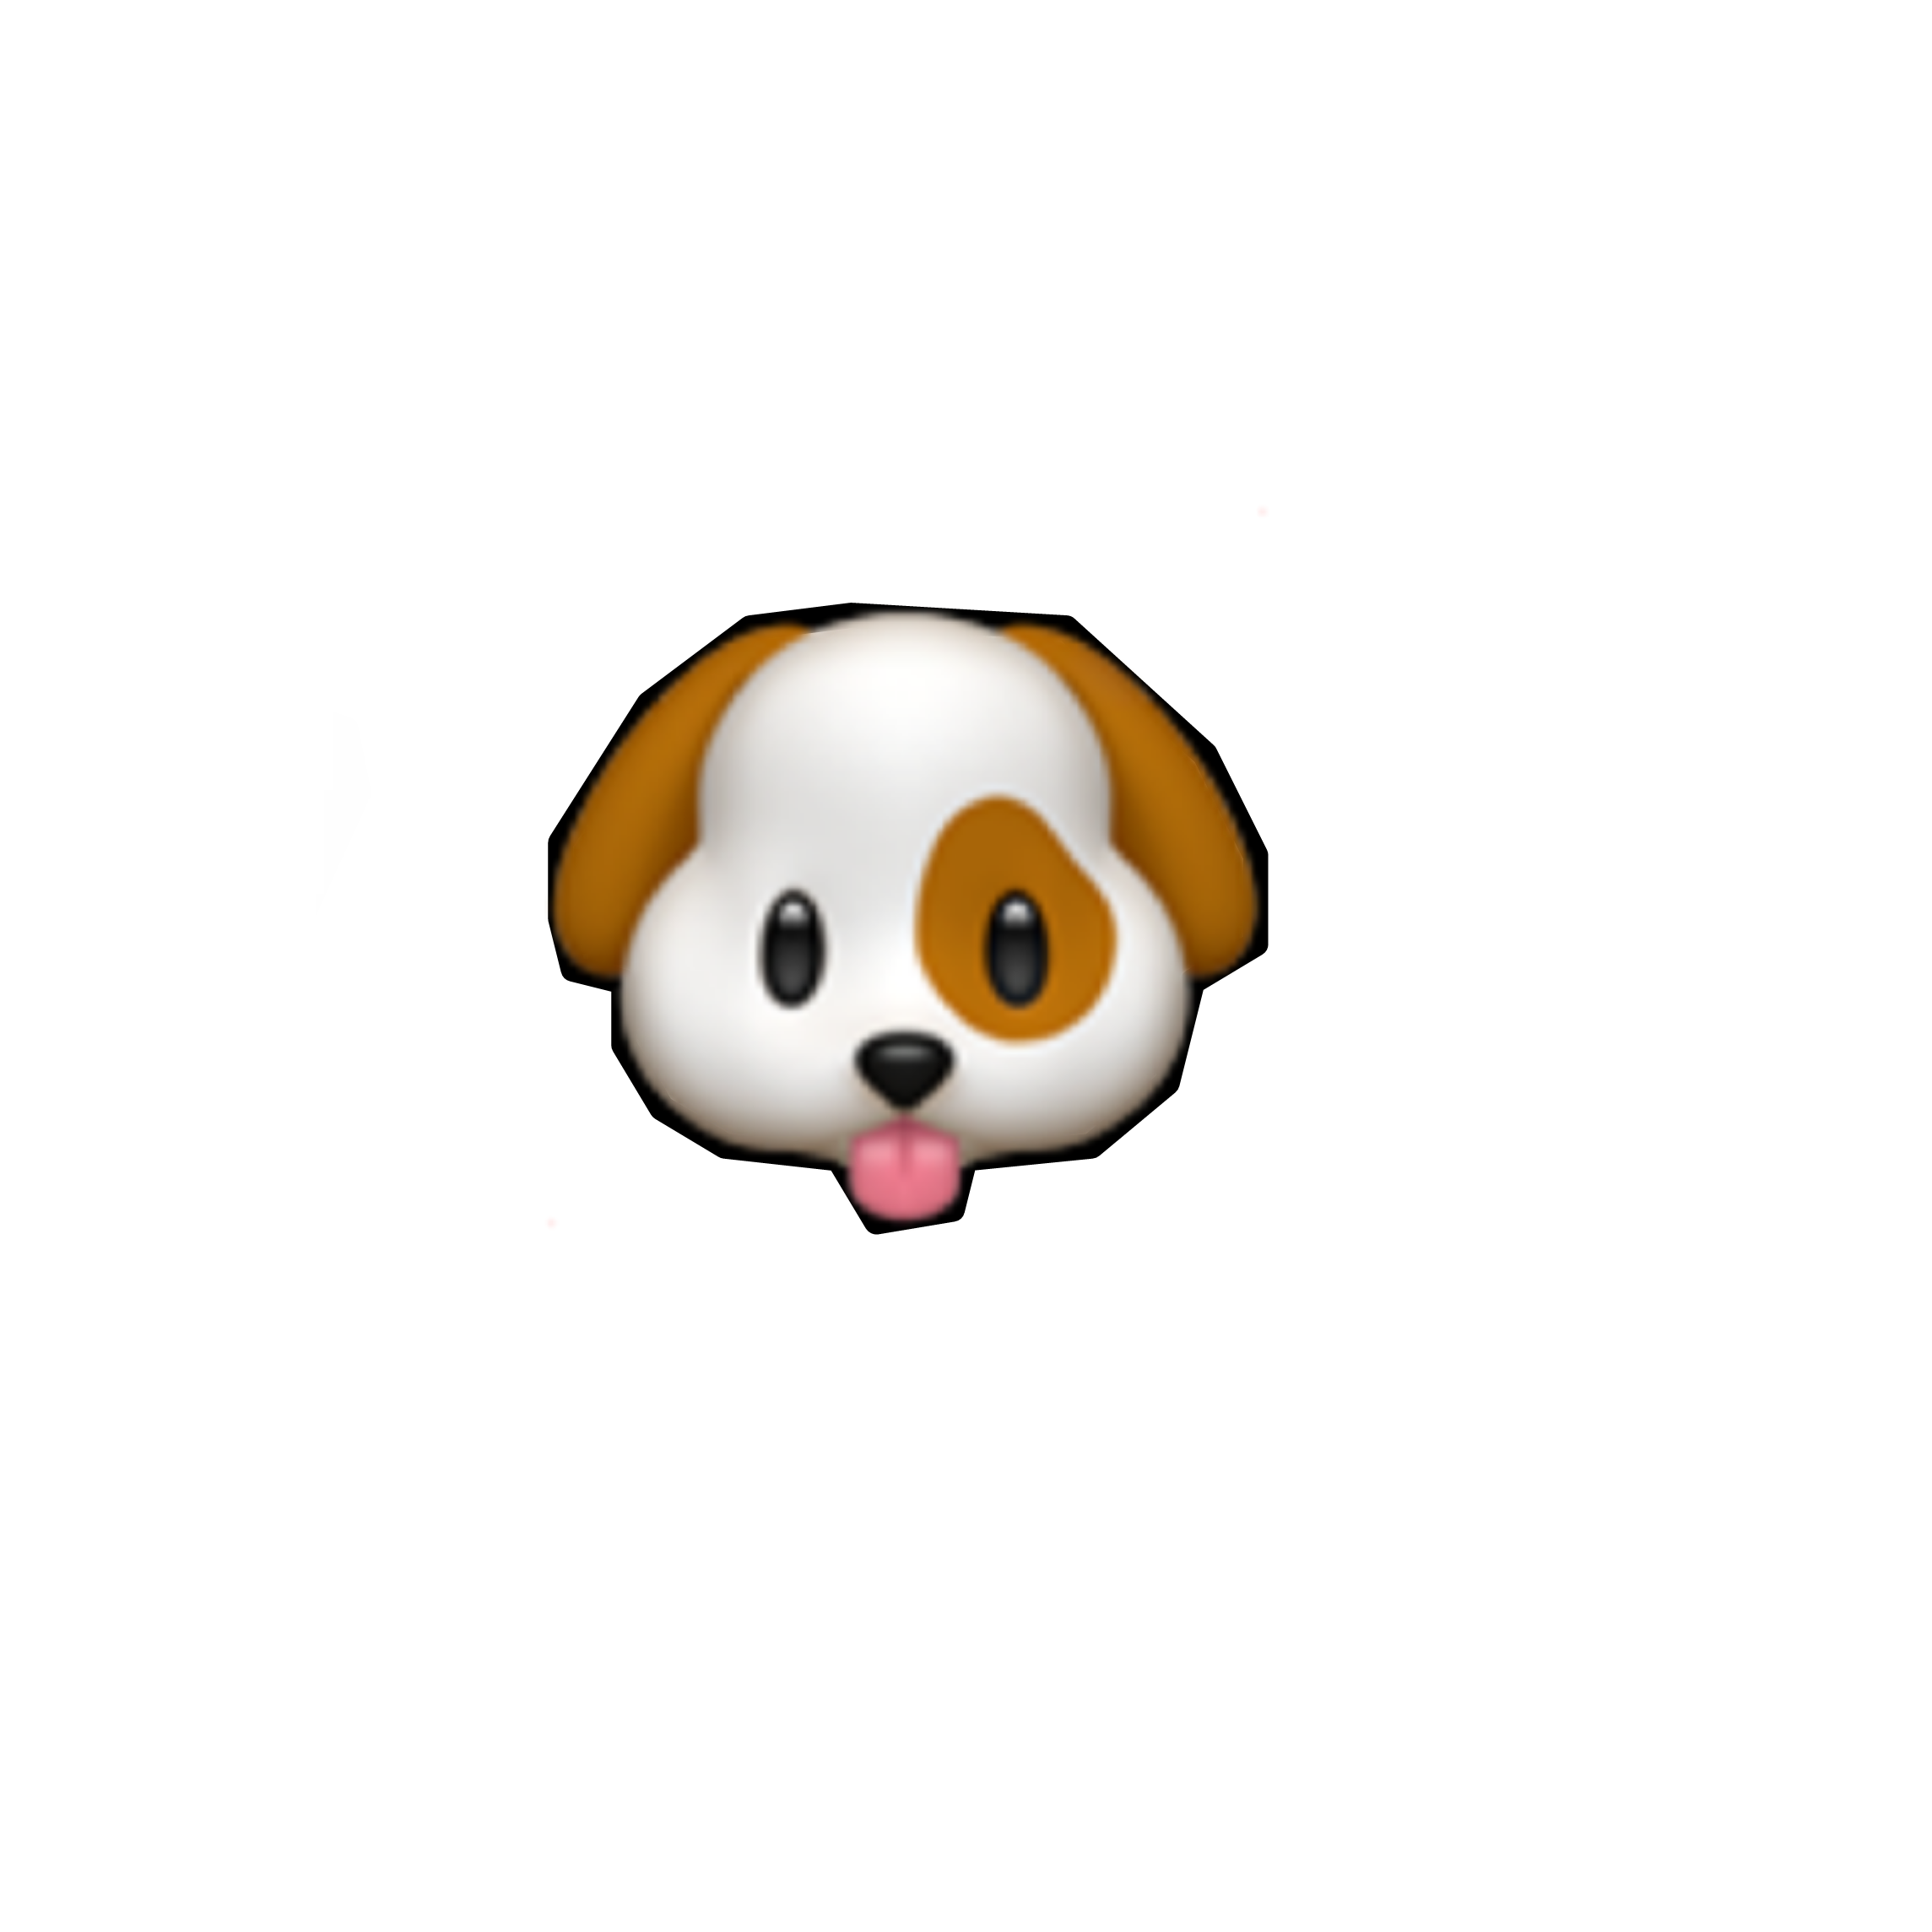 Dog emoji. ЭМОДЖИ собака. Смайлик щенок. Эмодзи щенок. Смайлик собаки айфон.